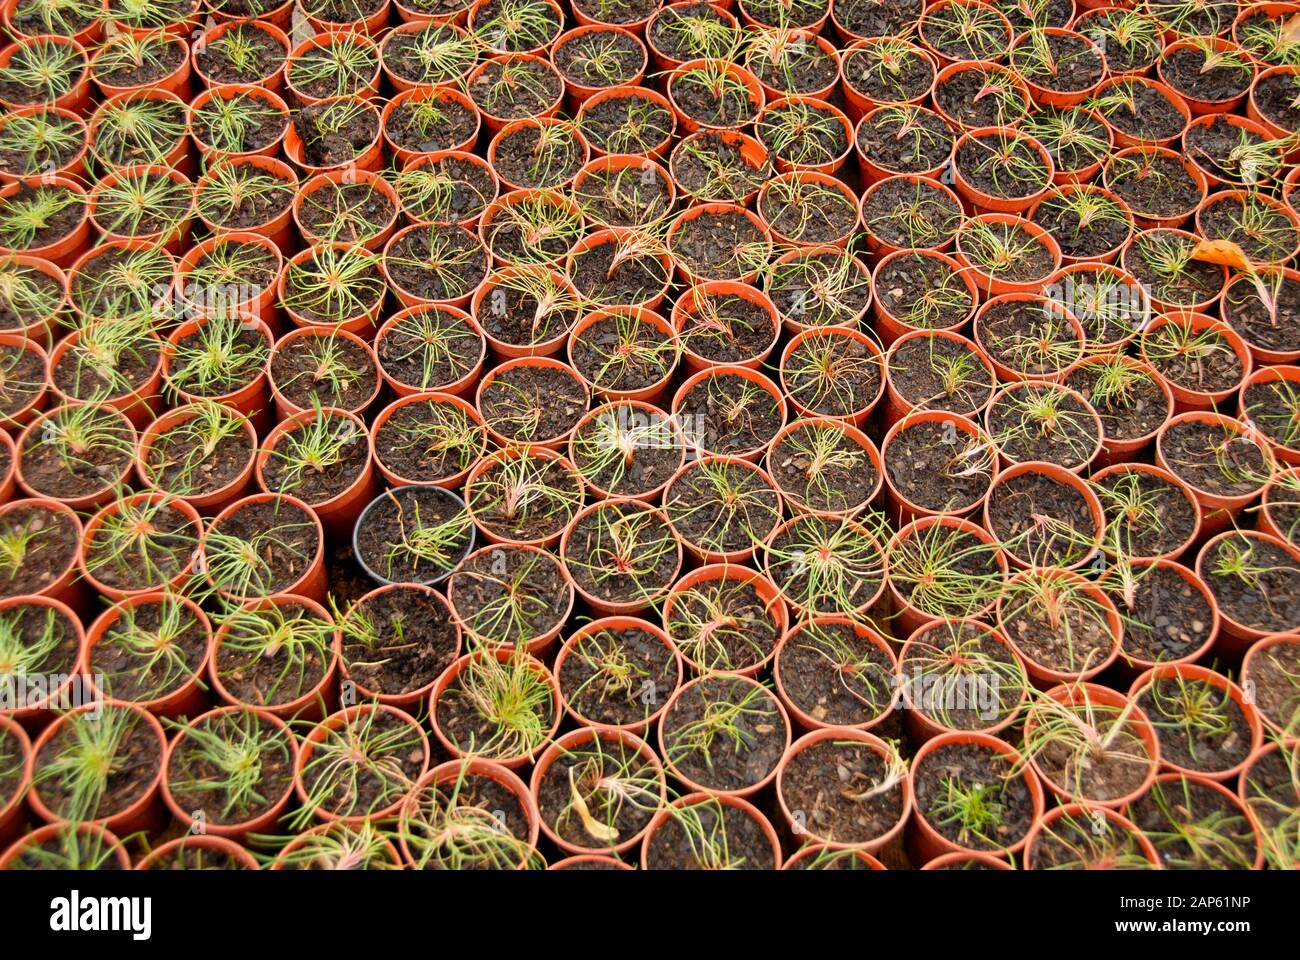 Schema astratto di molte piante giovani in vasi di plastica affollati insieme. Foto Stock